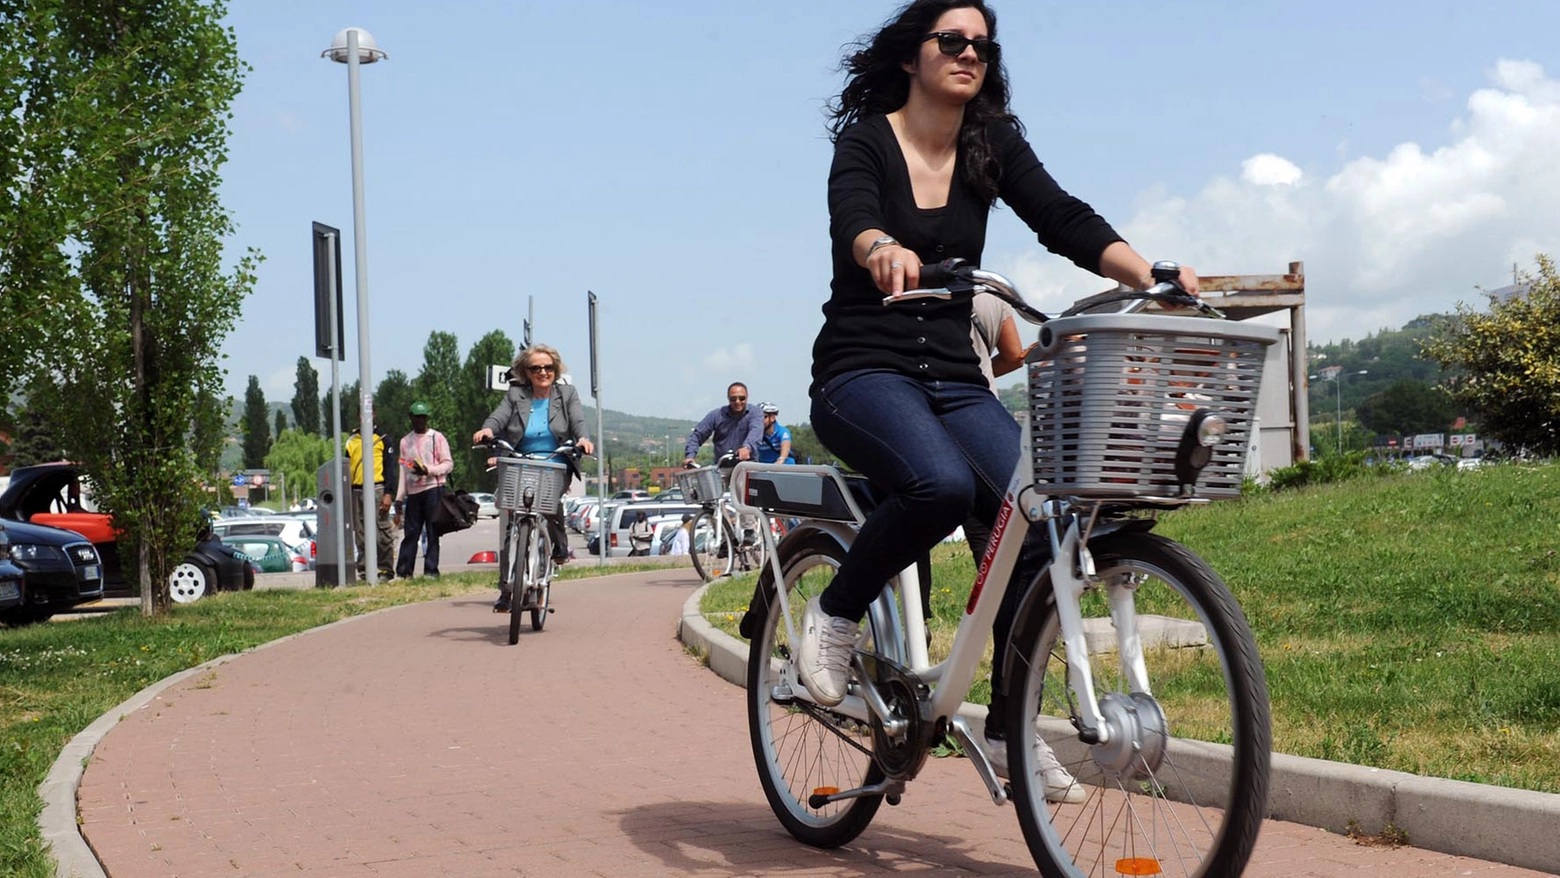 All’ufficio in bicicletta: incentivi e sconti per non prendere l’auto (Crocchioni)